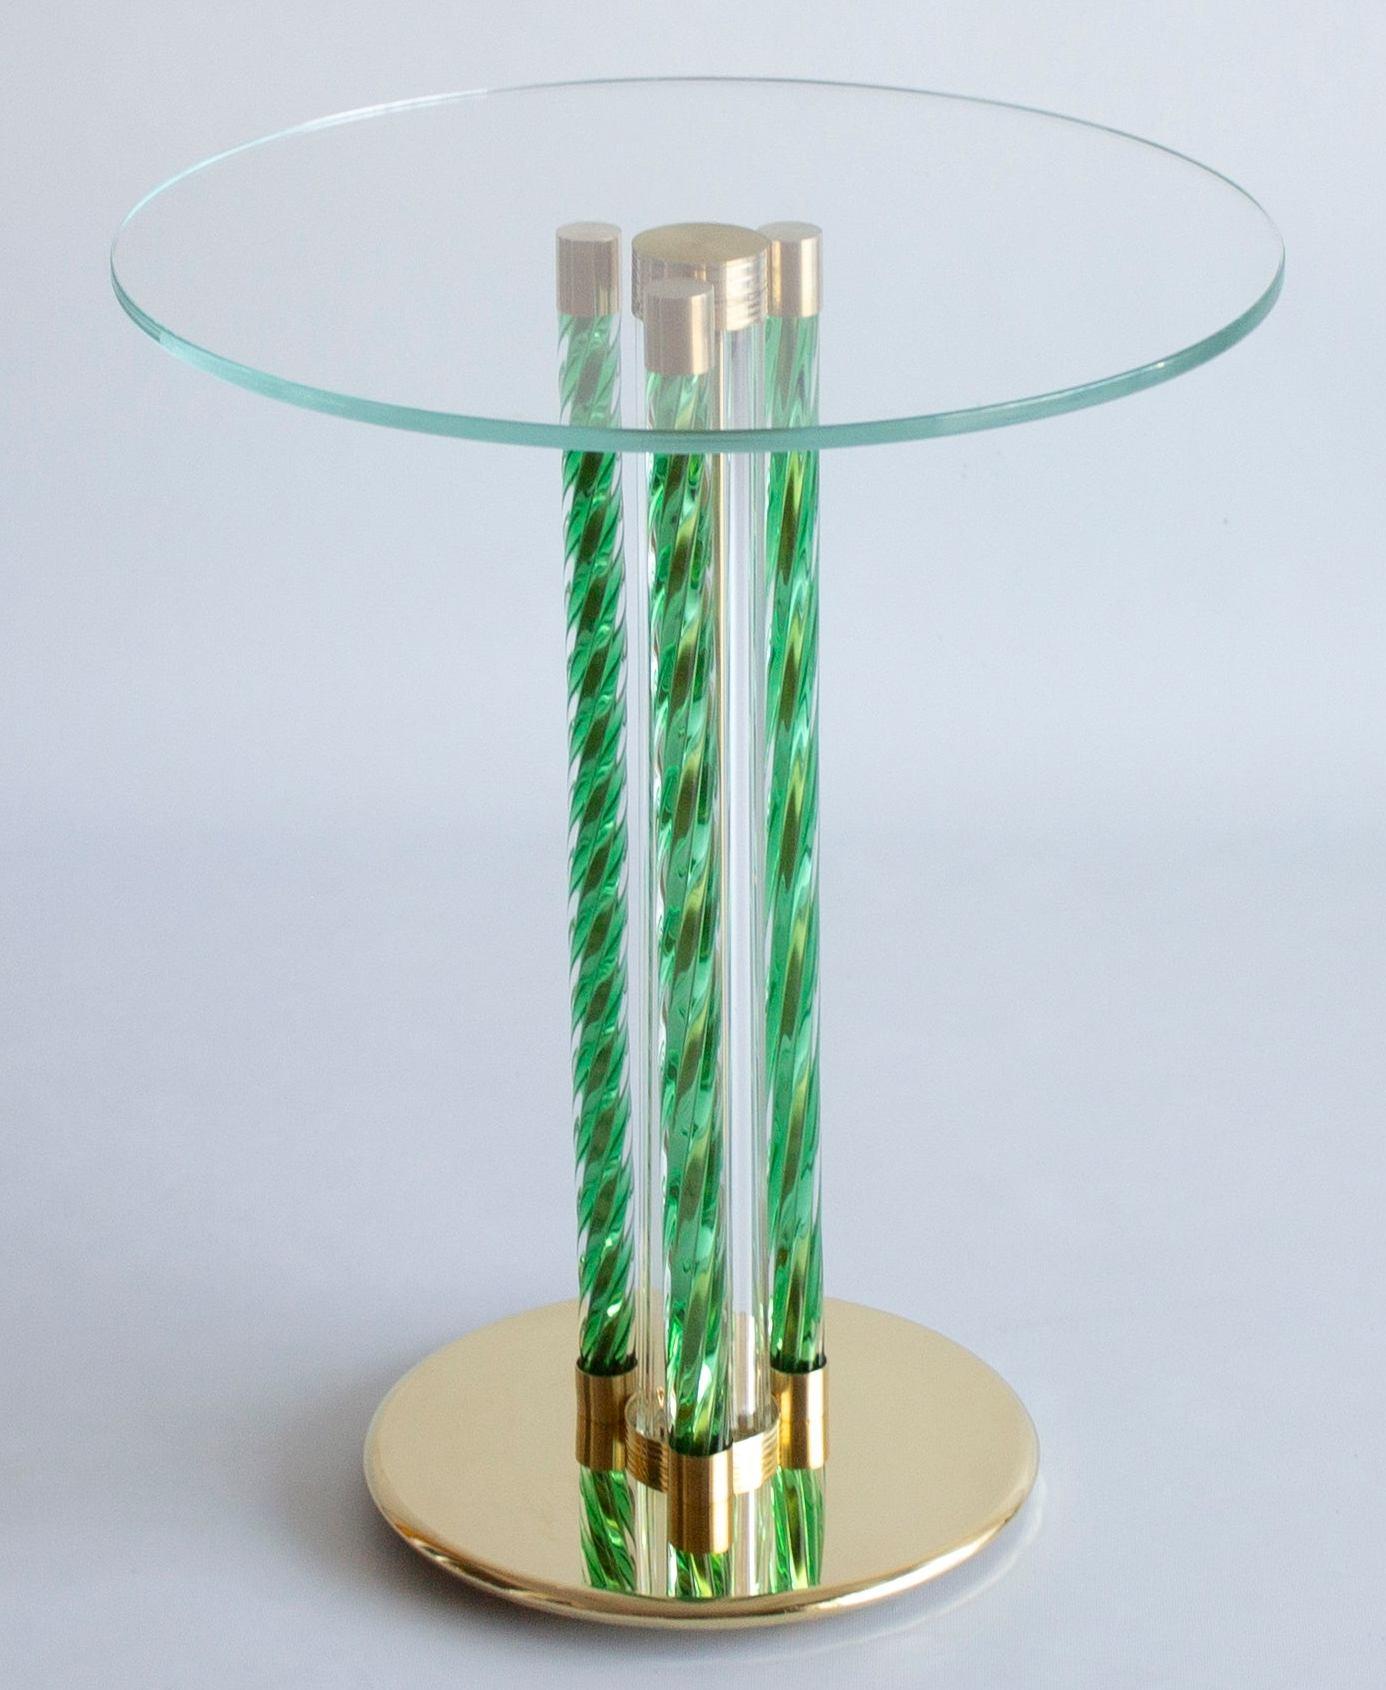 Eleganter grüner Cocktailtisch aus geblasenem Muranoglas und Messingrahmen Italien Zeitgenössisch.
Dieser Couchtisch ist ein Kunstwerk, das aus drei gedrehten Säulen in grüner Farbe besteht, die vollständig aus mundgeblasenem Muranoglas